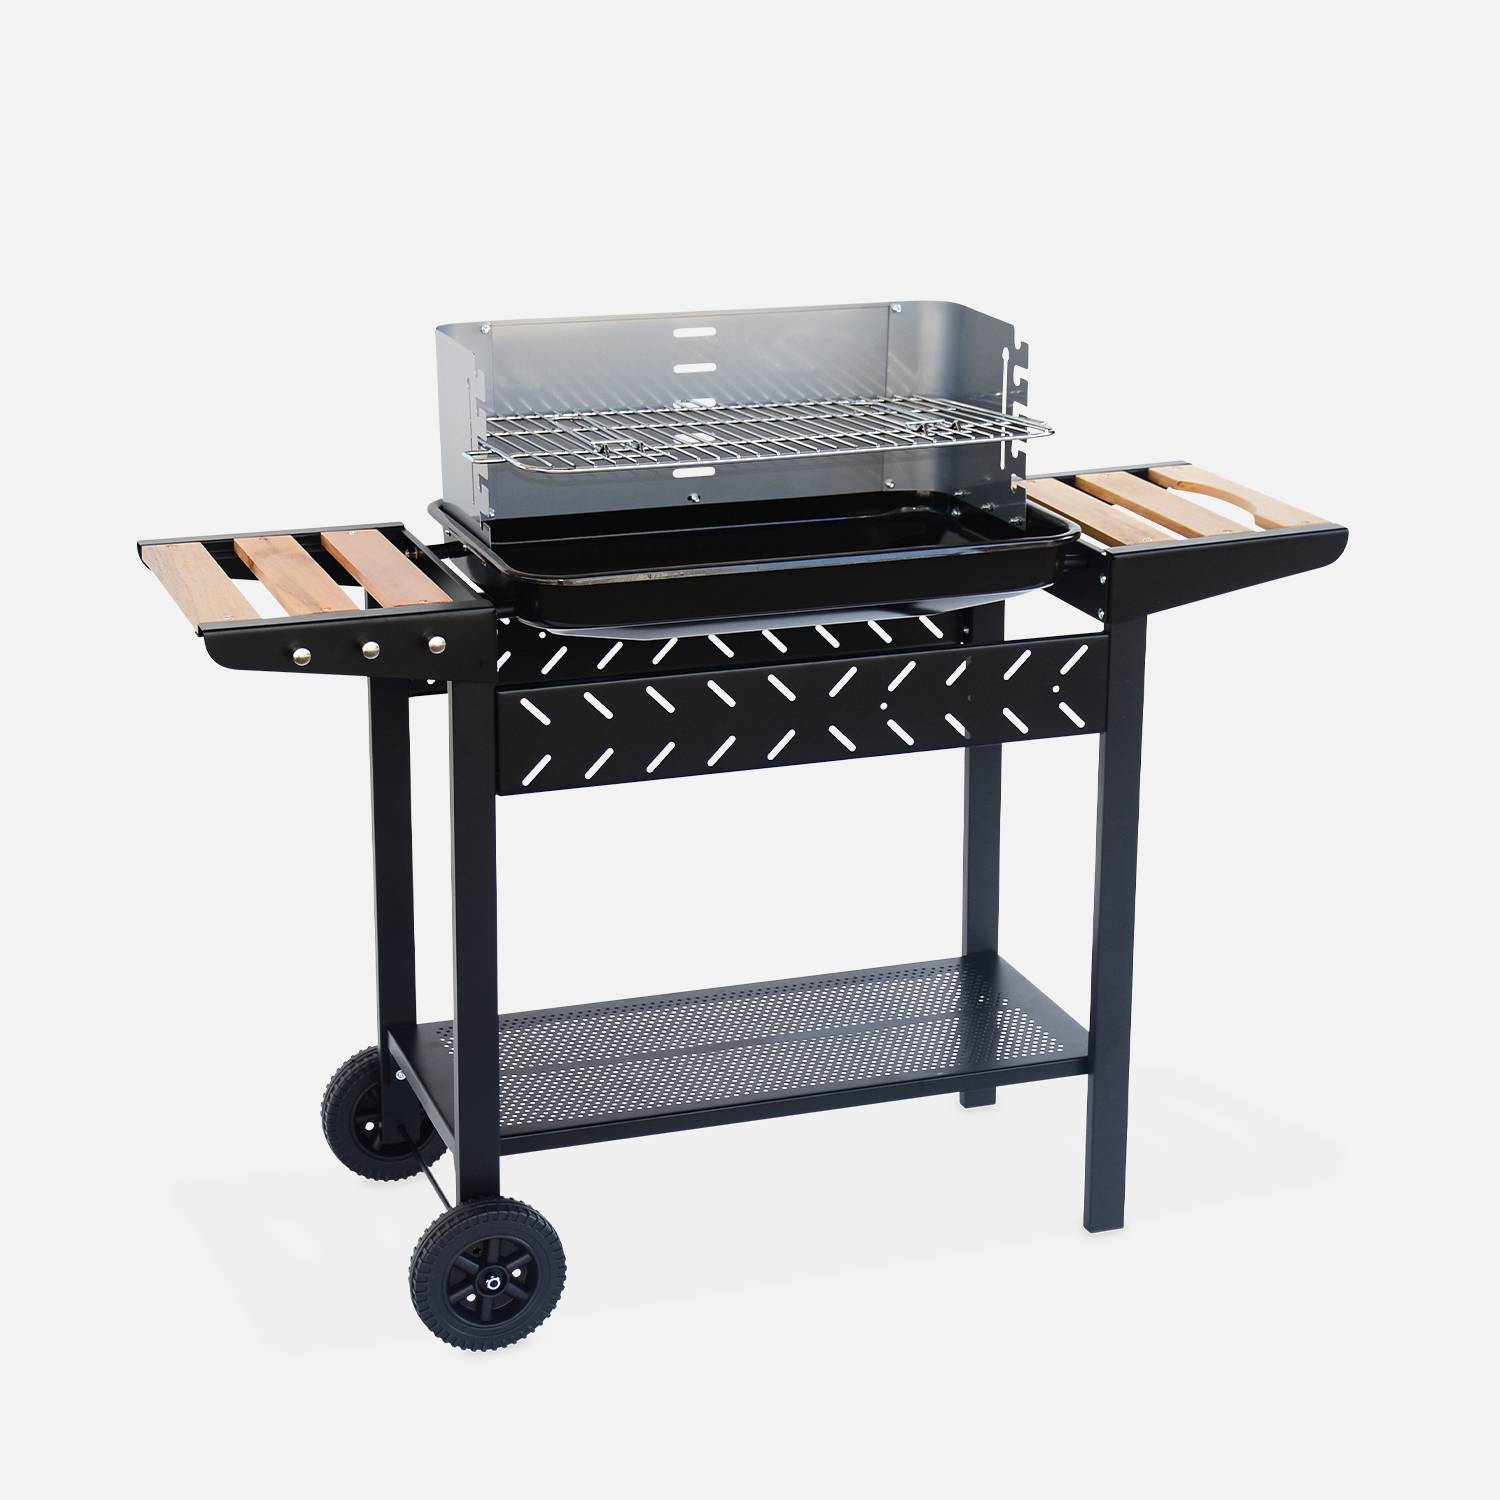 Barbecue au charbon - Alfred - Noir et gris, hauteur de grille ajustable, cuve émaillée, tablettes en bois, étagère et crochets,sweeek,Photo2